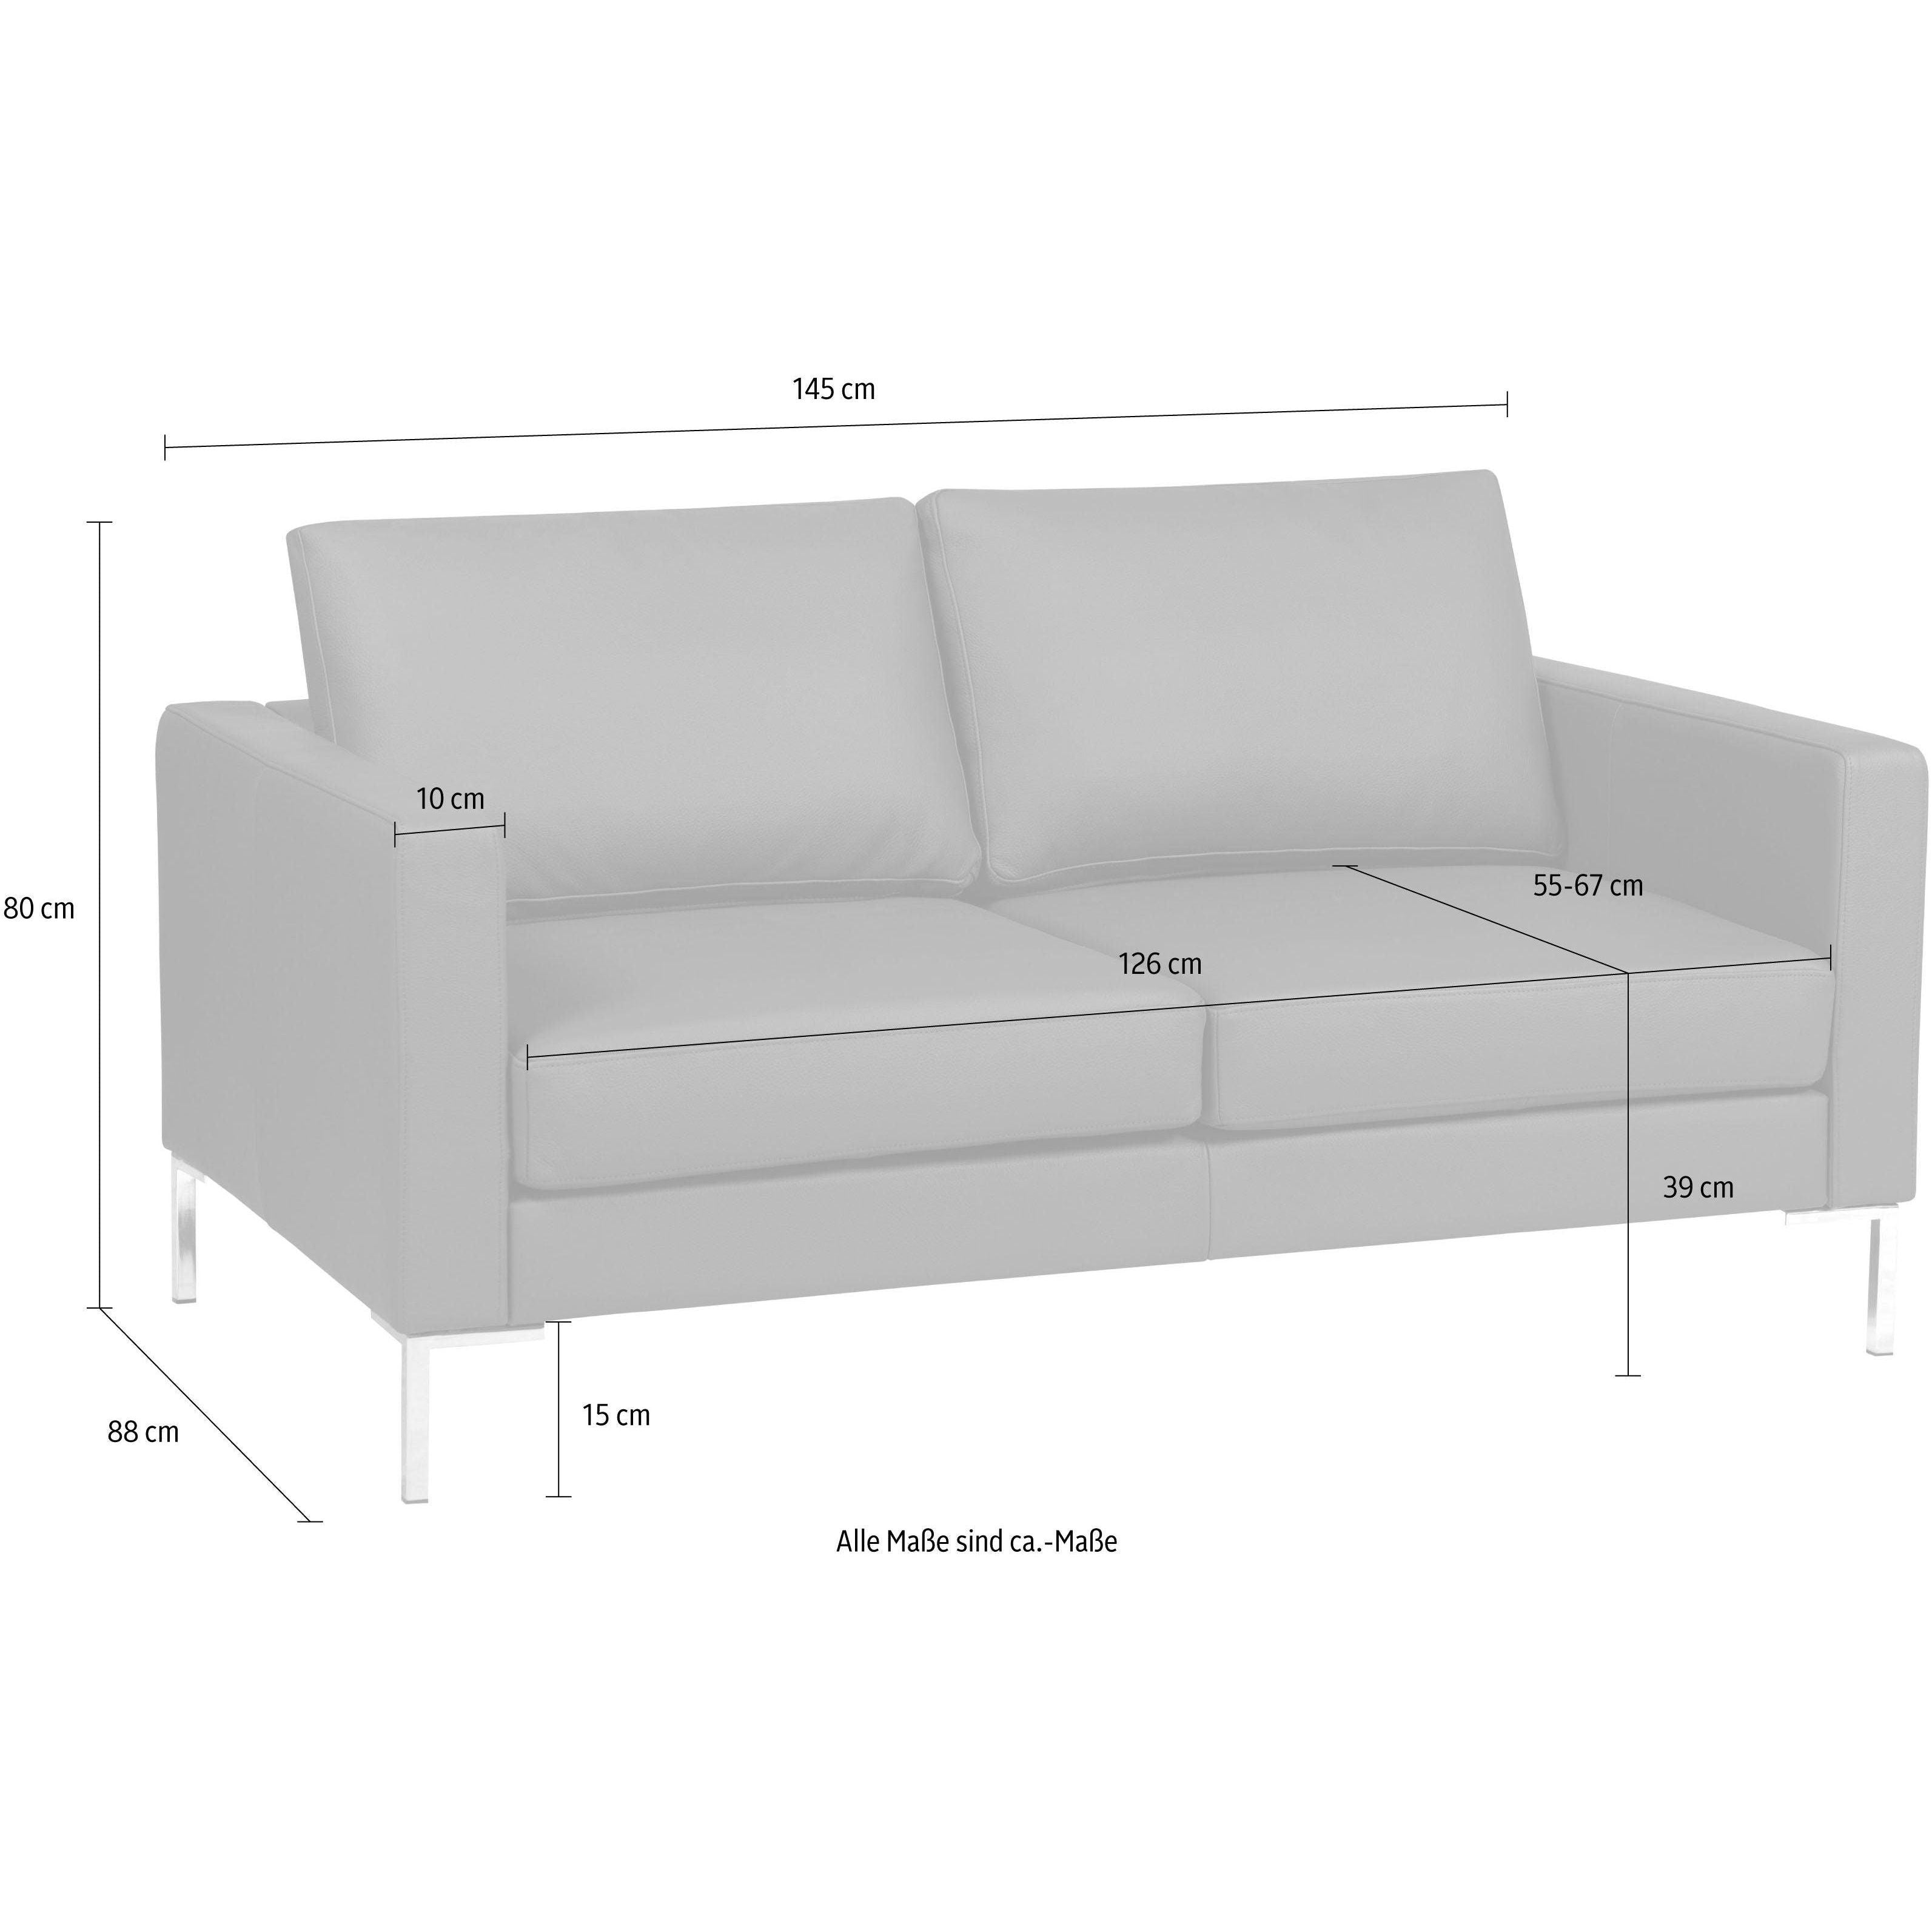 2-Sitzer Sofa Portobello, Echtleder Comfort - Dunkelgrau